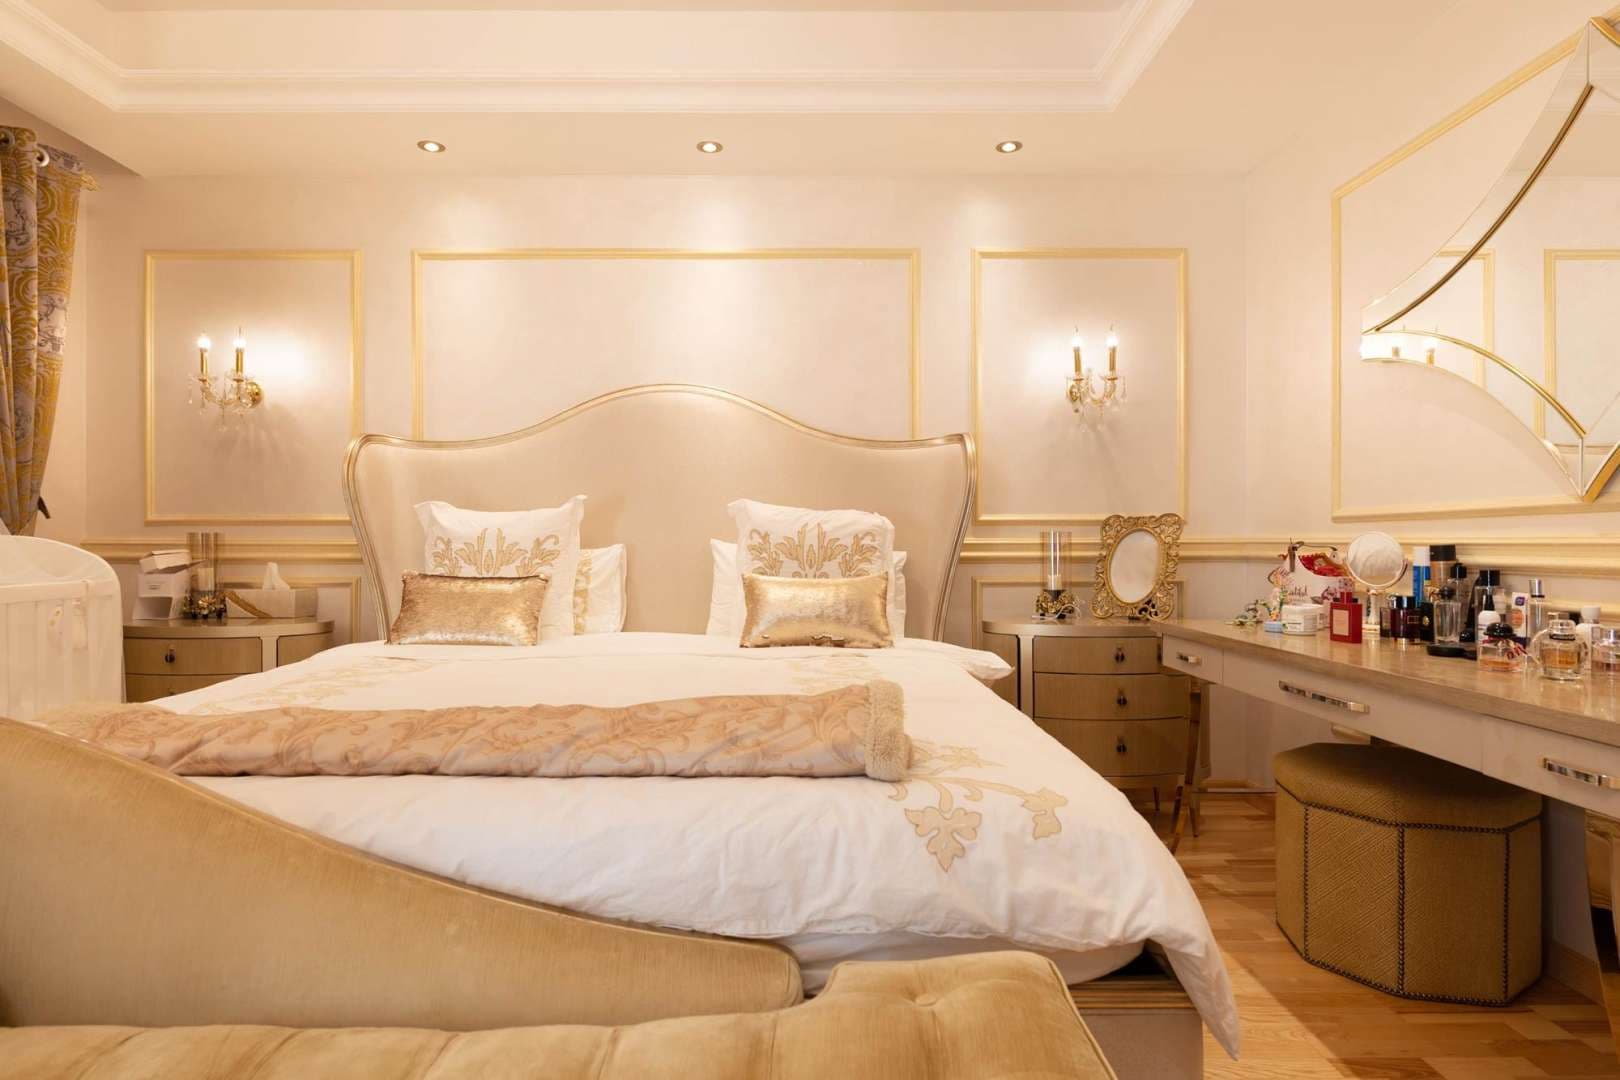 5 Bedroom Villa For Rent Meadows 5 Lp05304 91c1ad5d841f600.jpg